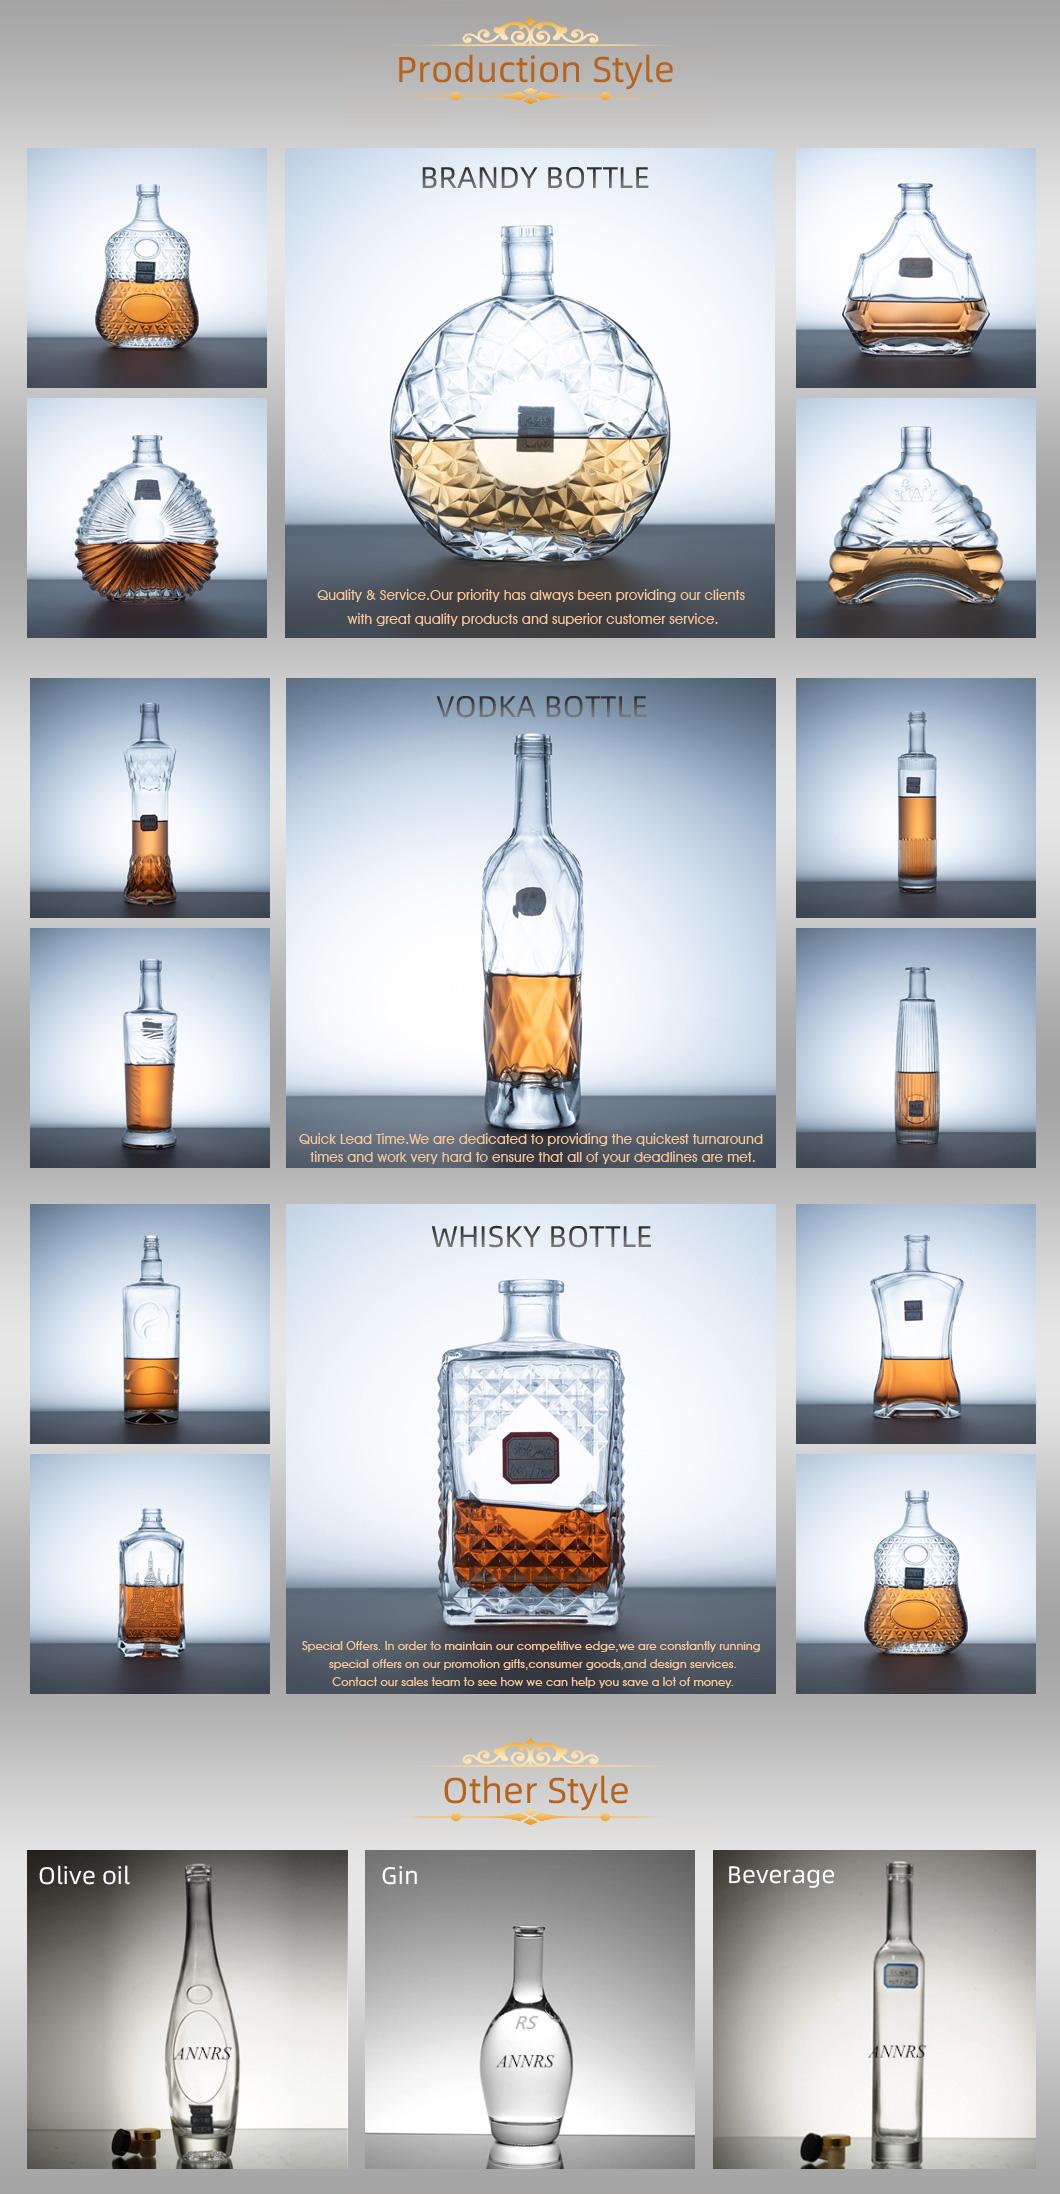 New Custom made  super flint glass bottles XO/brandy/whiskey/vodka glass bottle manufacture wholesale